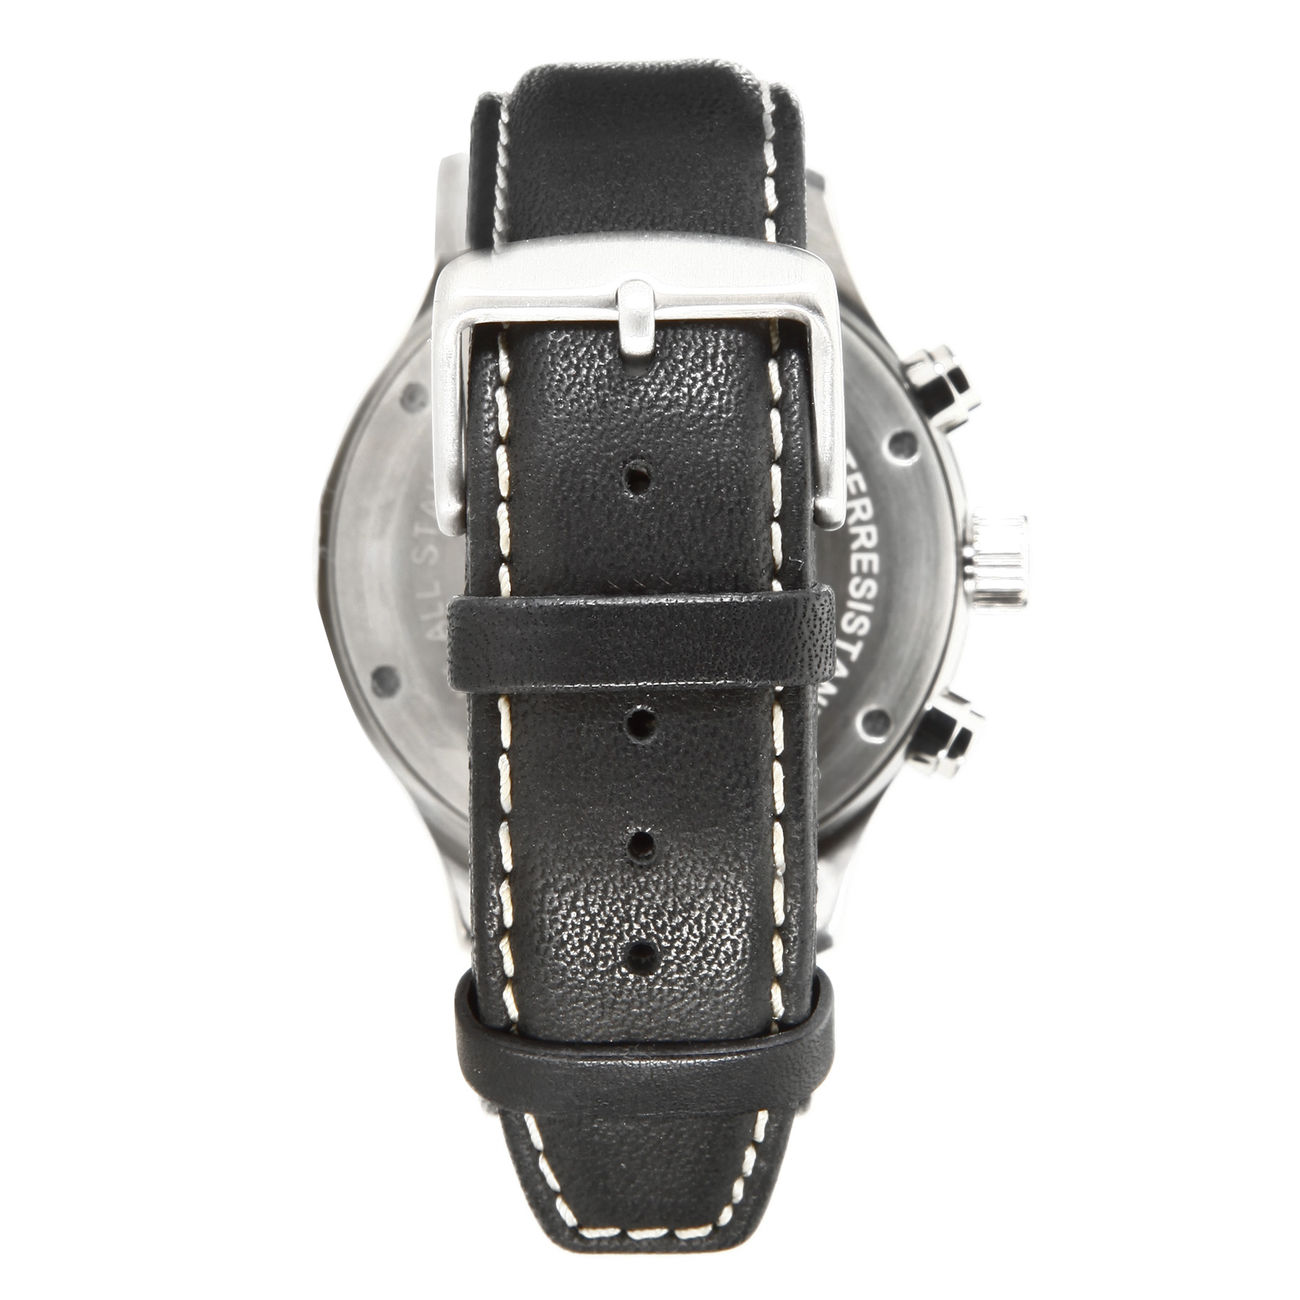 Messerschmitt Chrono Uhr 5031L, roter Sekundenzeiger Bild 1